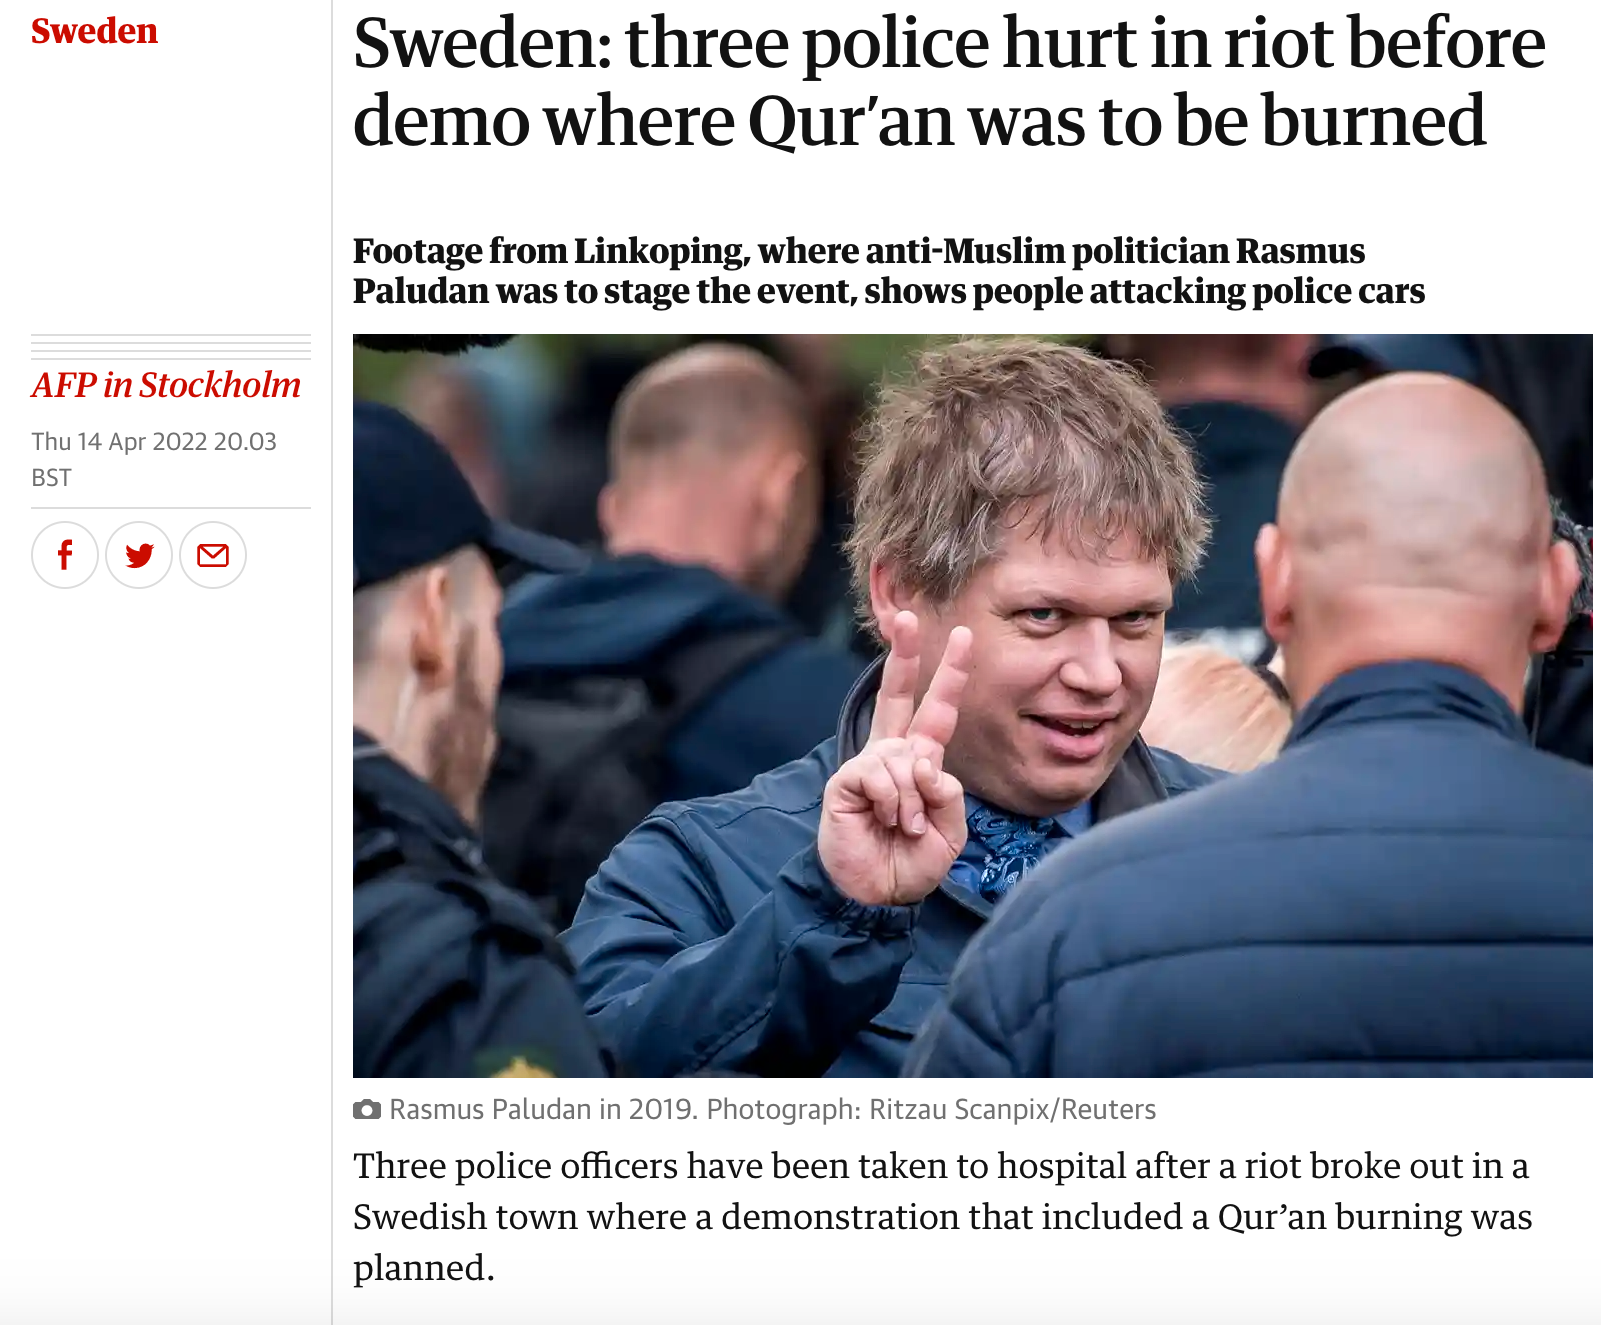 Brittiska tidningen The Guardian har publicerat flera artiklar om  de senaste dagarnas oroligheter i Sverige. 